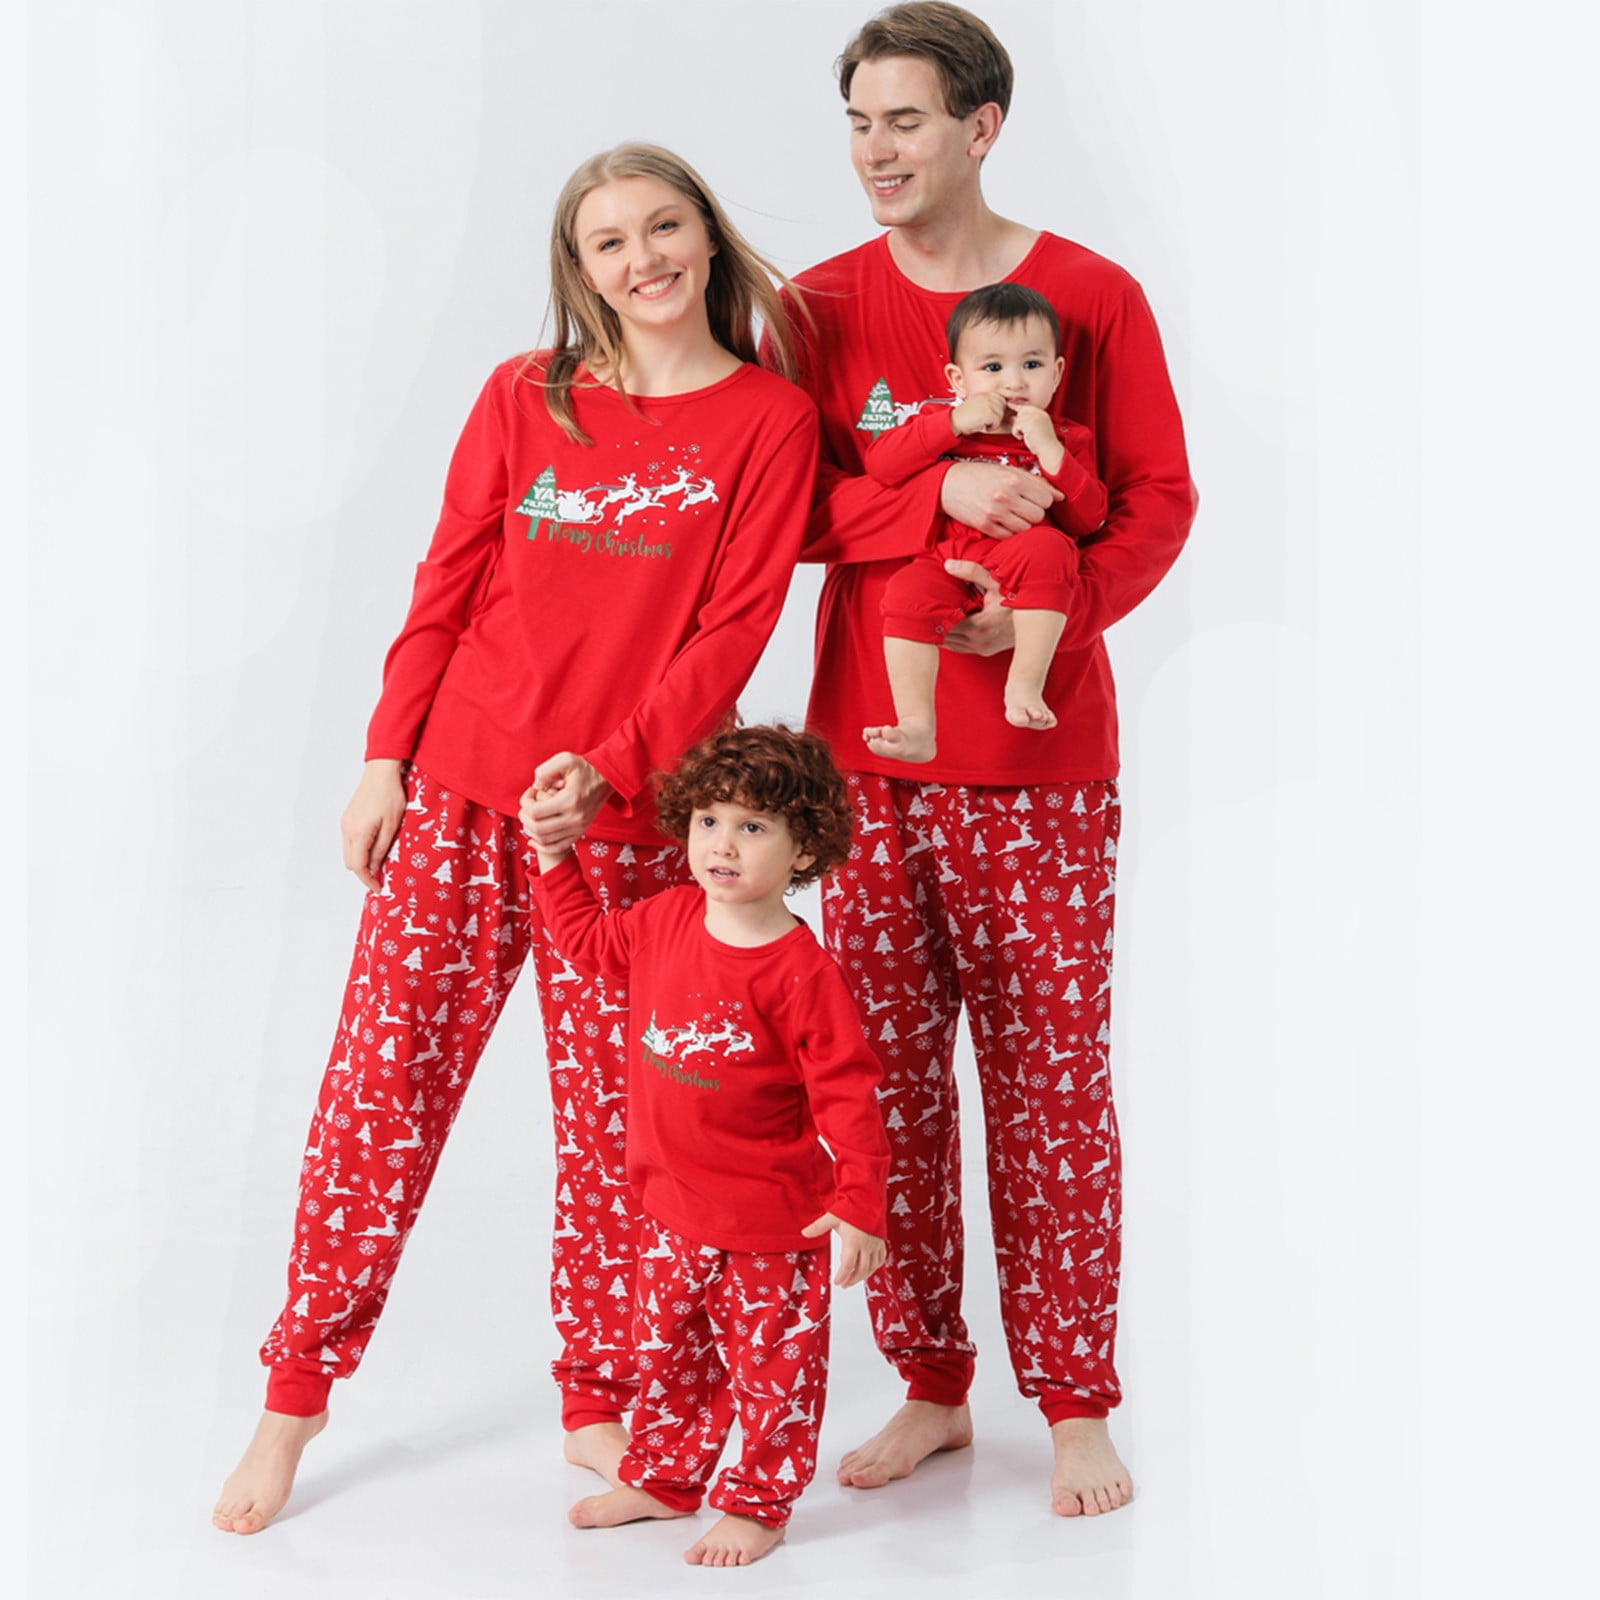 Christmas Pyjamas Women Men Kids Family Matching Nightwear PJs Sets Xmas Gifts 